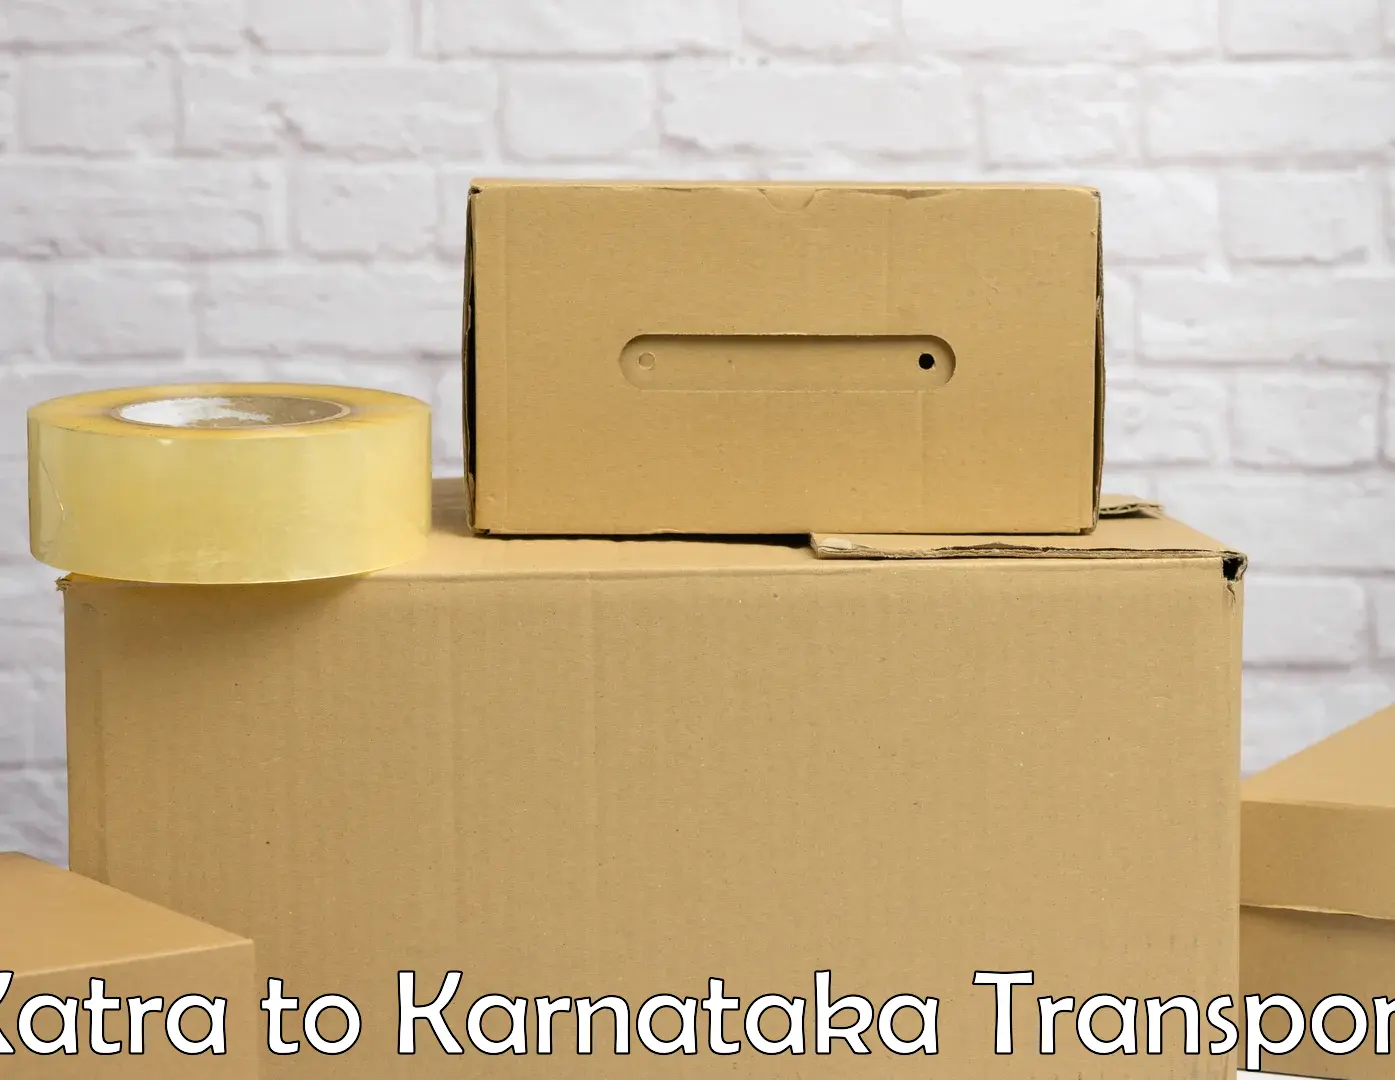 Intercity transport Katra to Yenepoya Mangalore